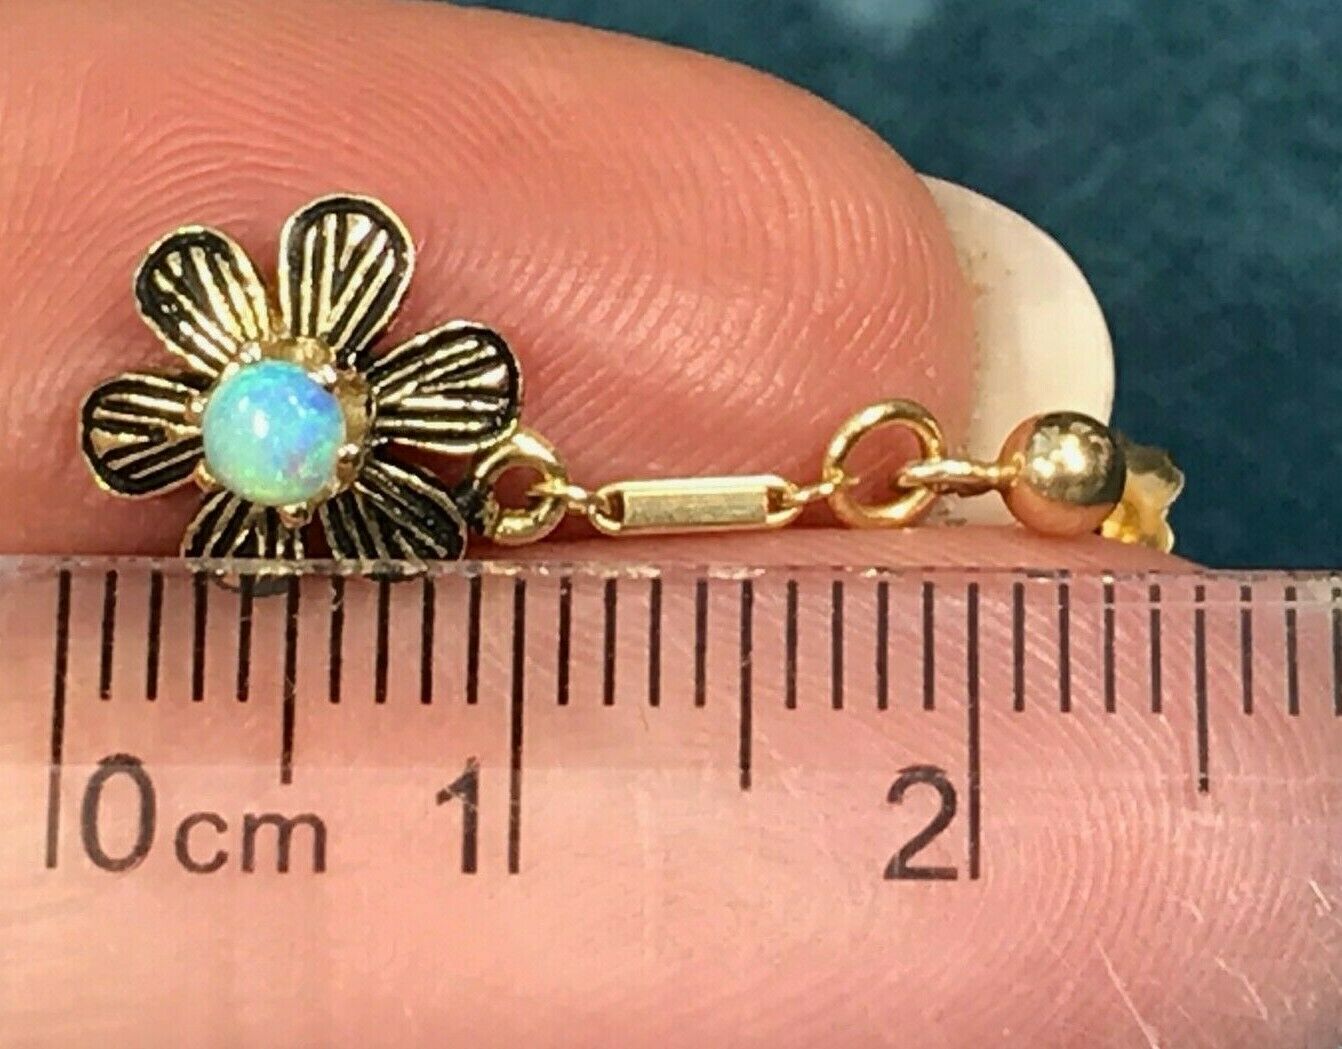 14k Yellow Gold Australian Opal Earrings. Dangly Deco Posies